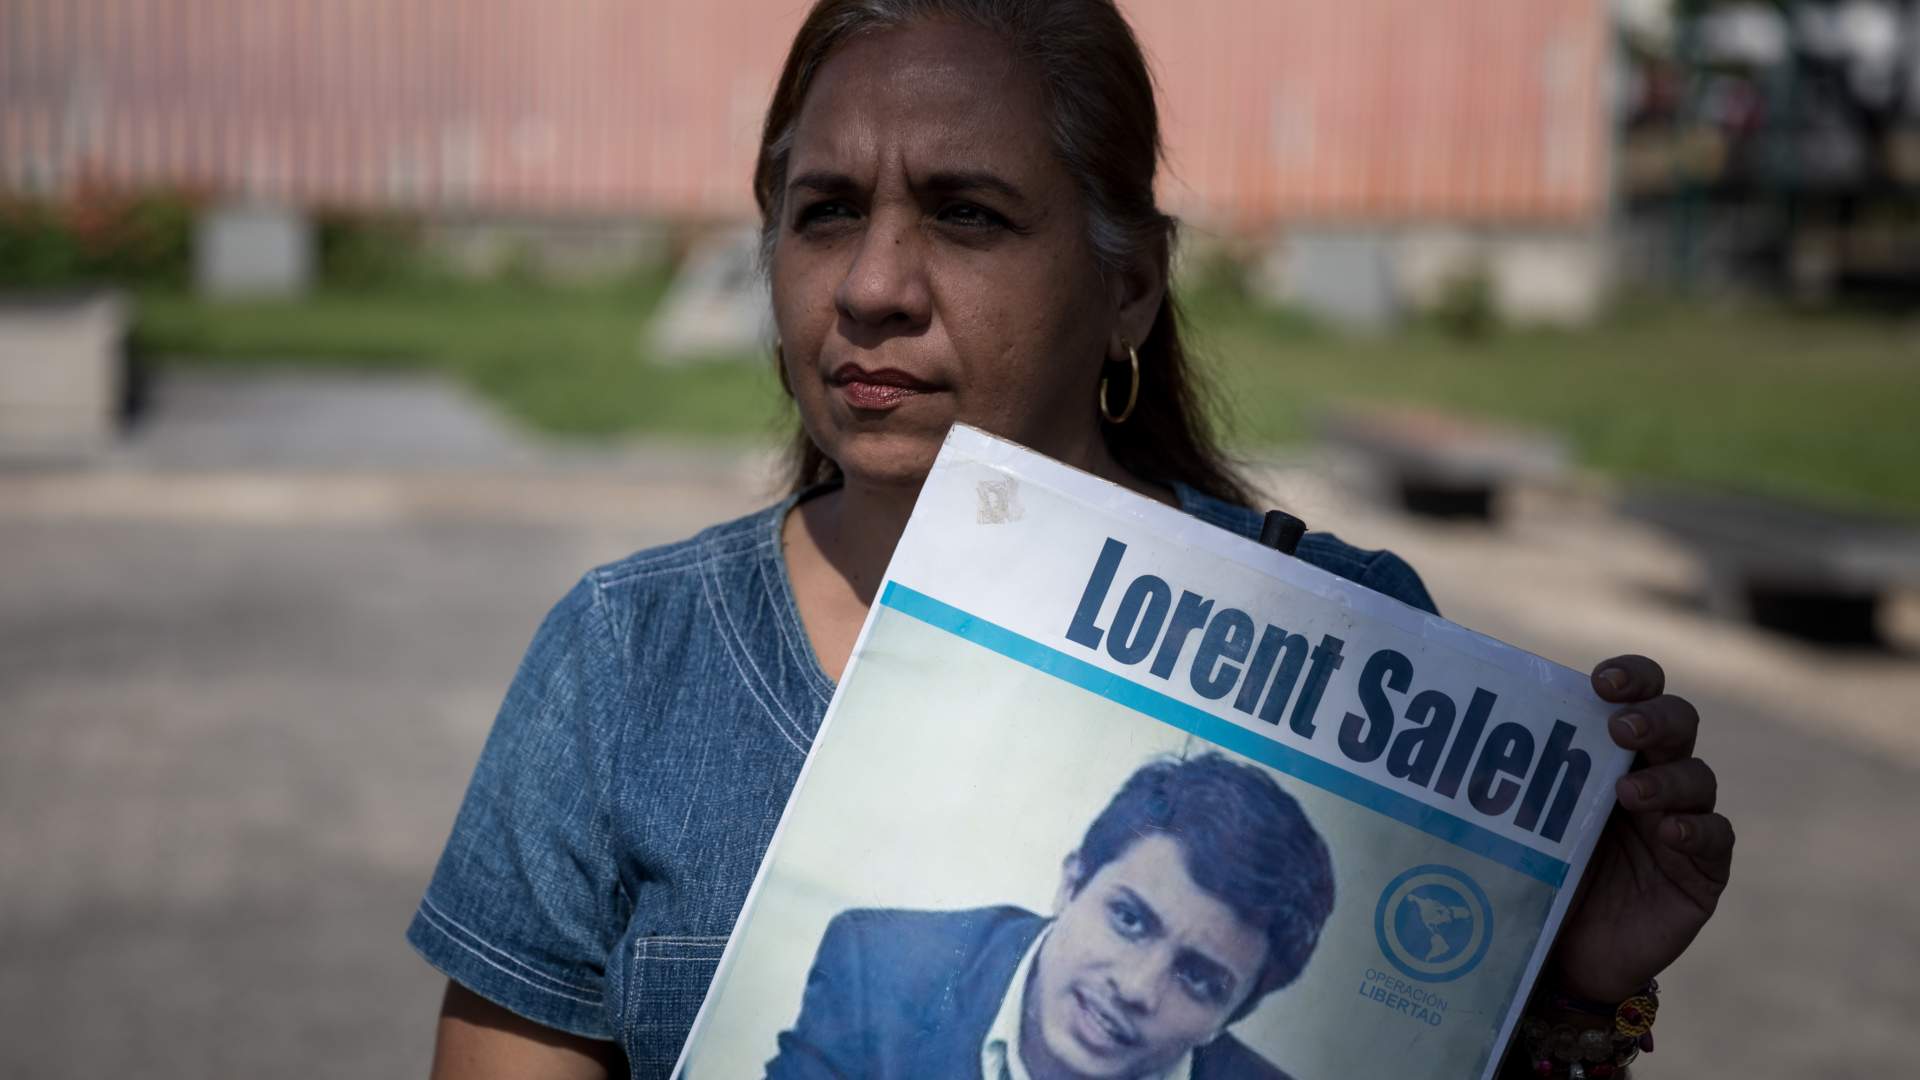 Venezuela saca de prisión y envía a España al preso político Lorent Saleh